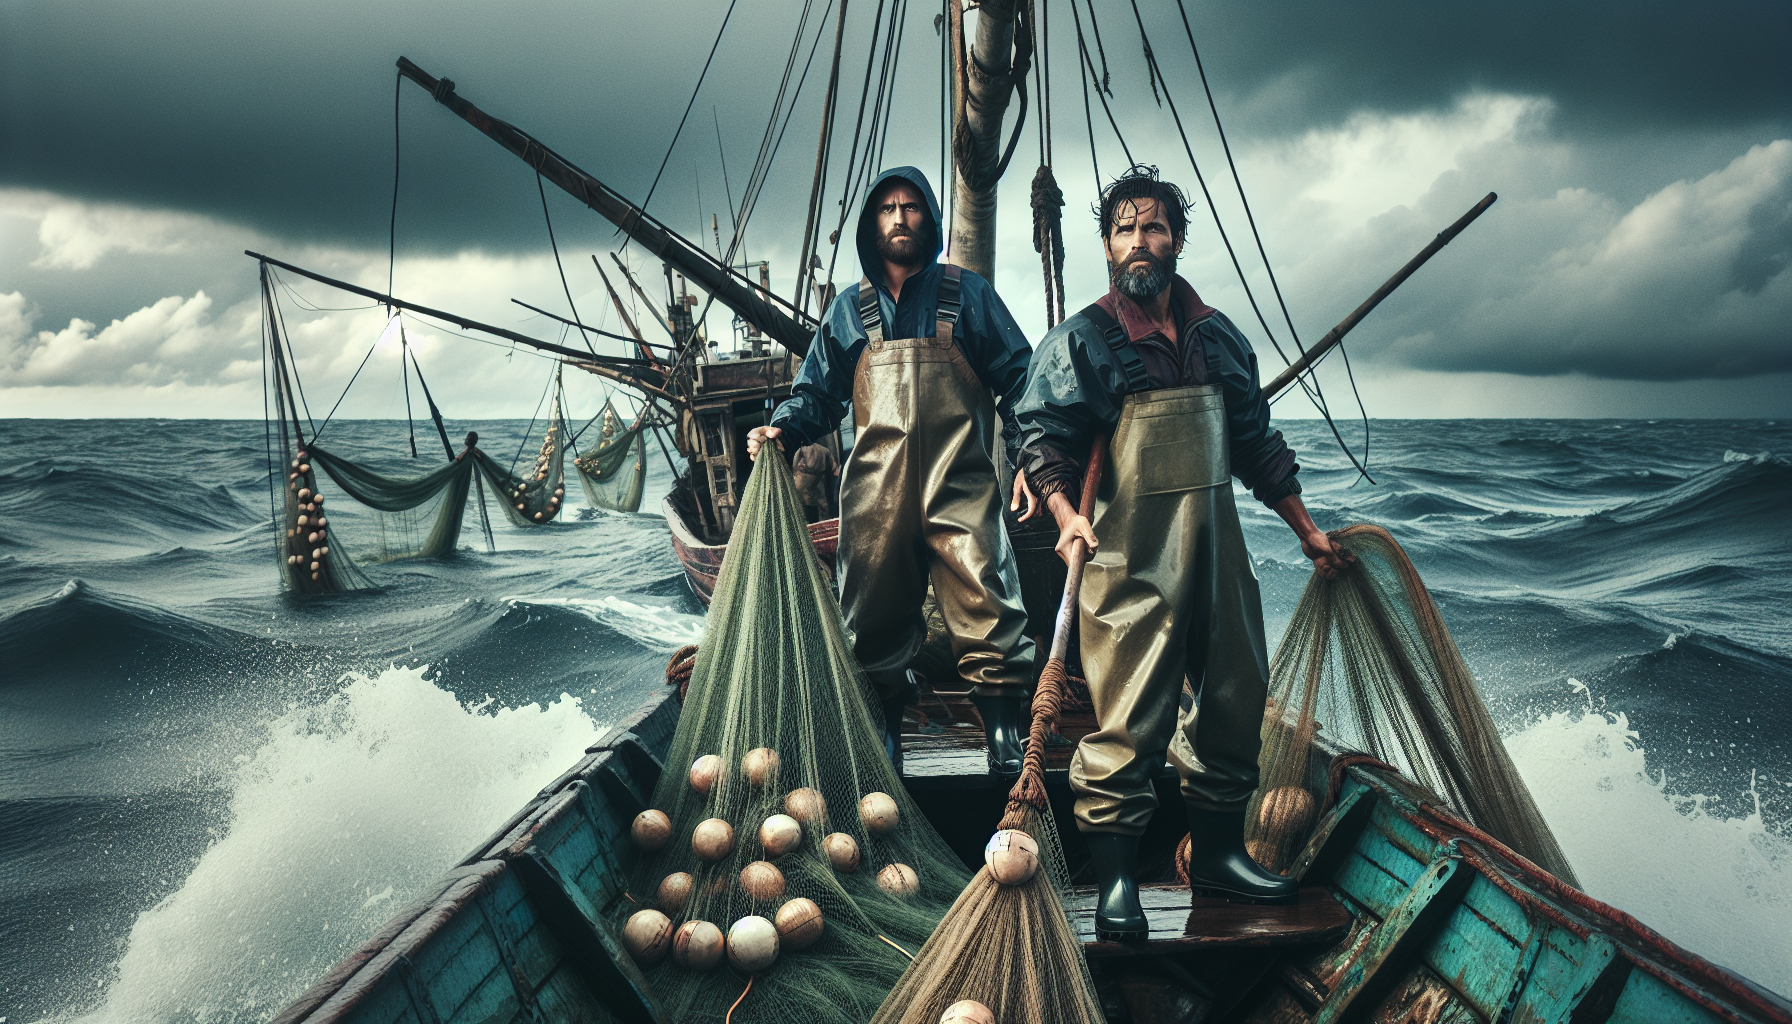 Ngư dân vùng biển là những người dũng cảm, đấu tranh hàng ngày với biển cả.